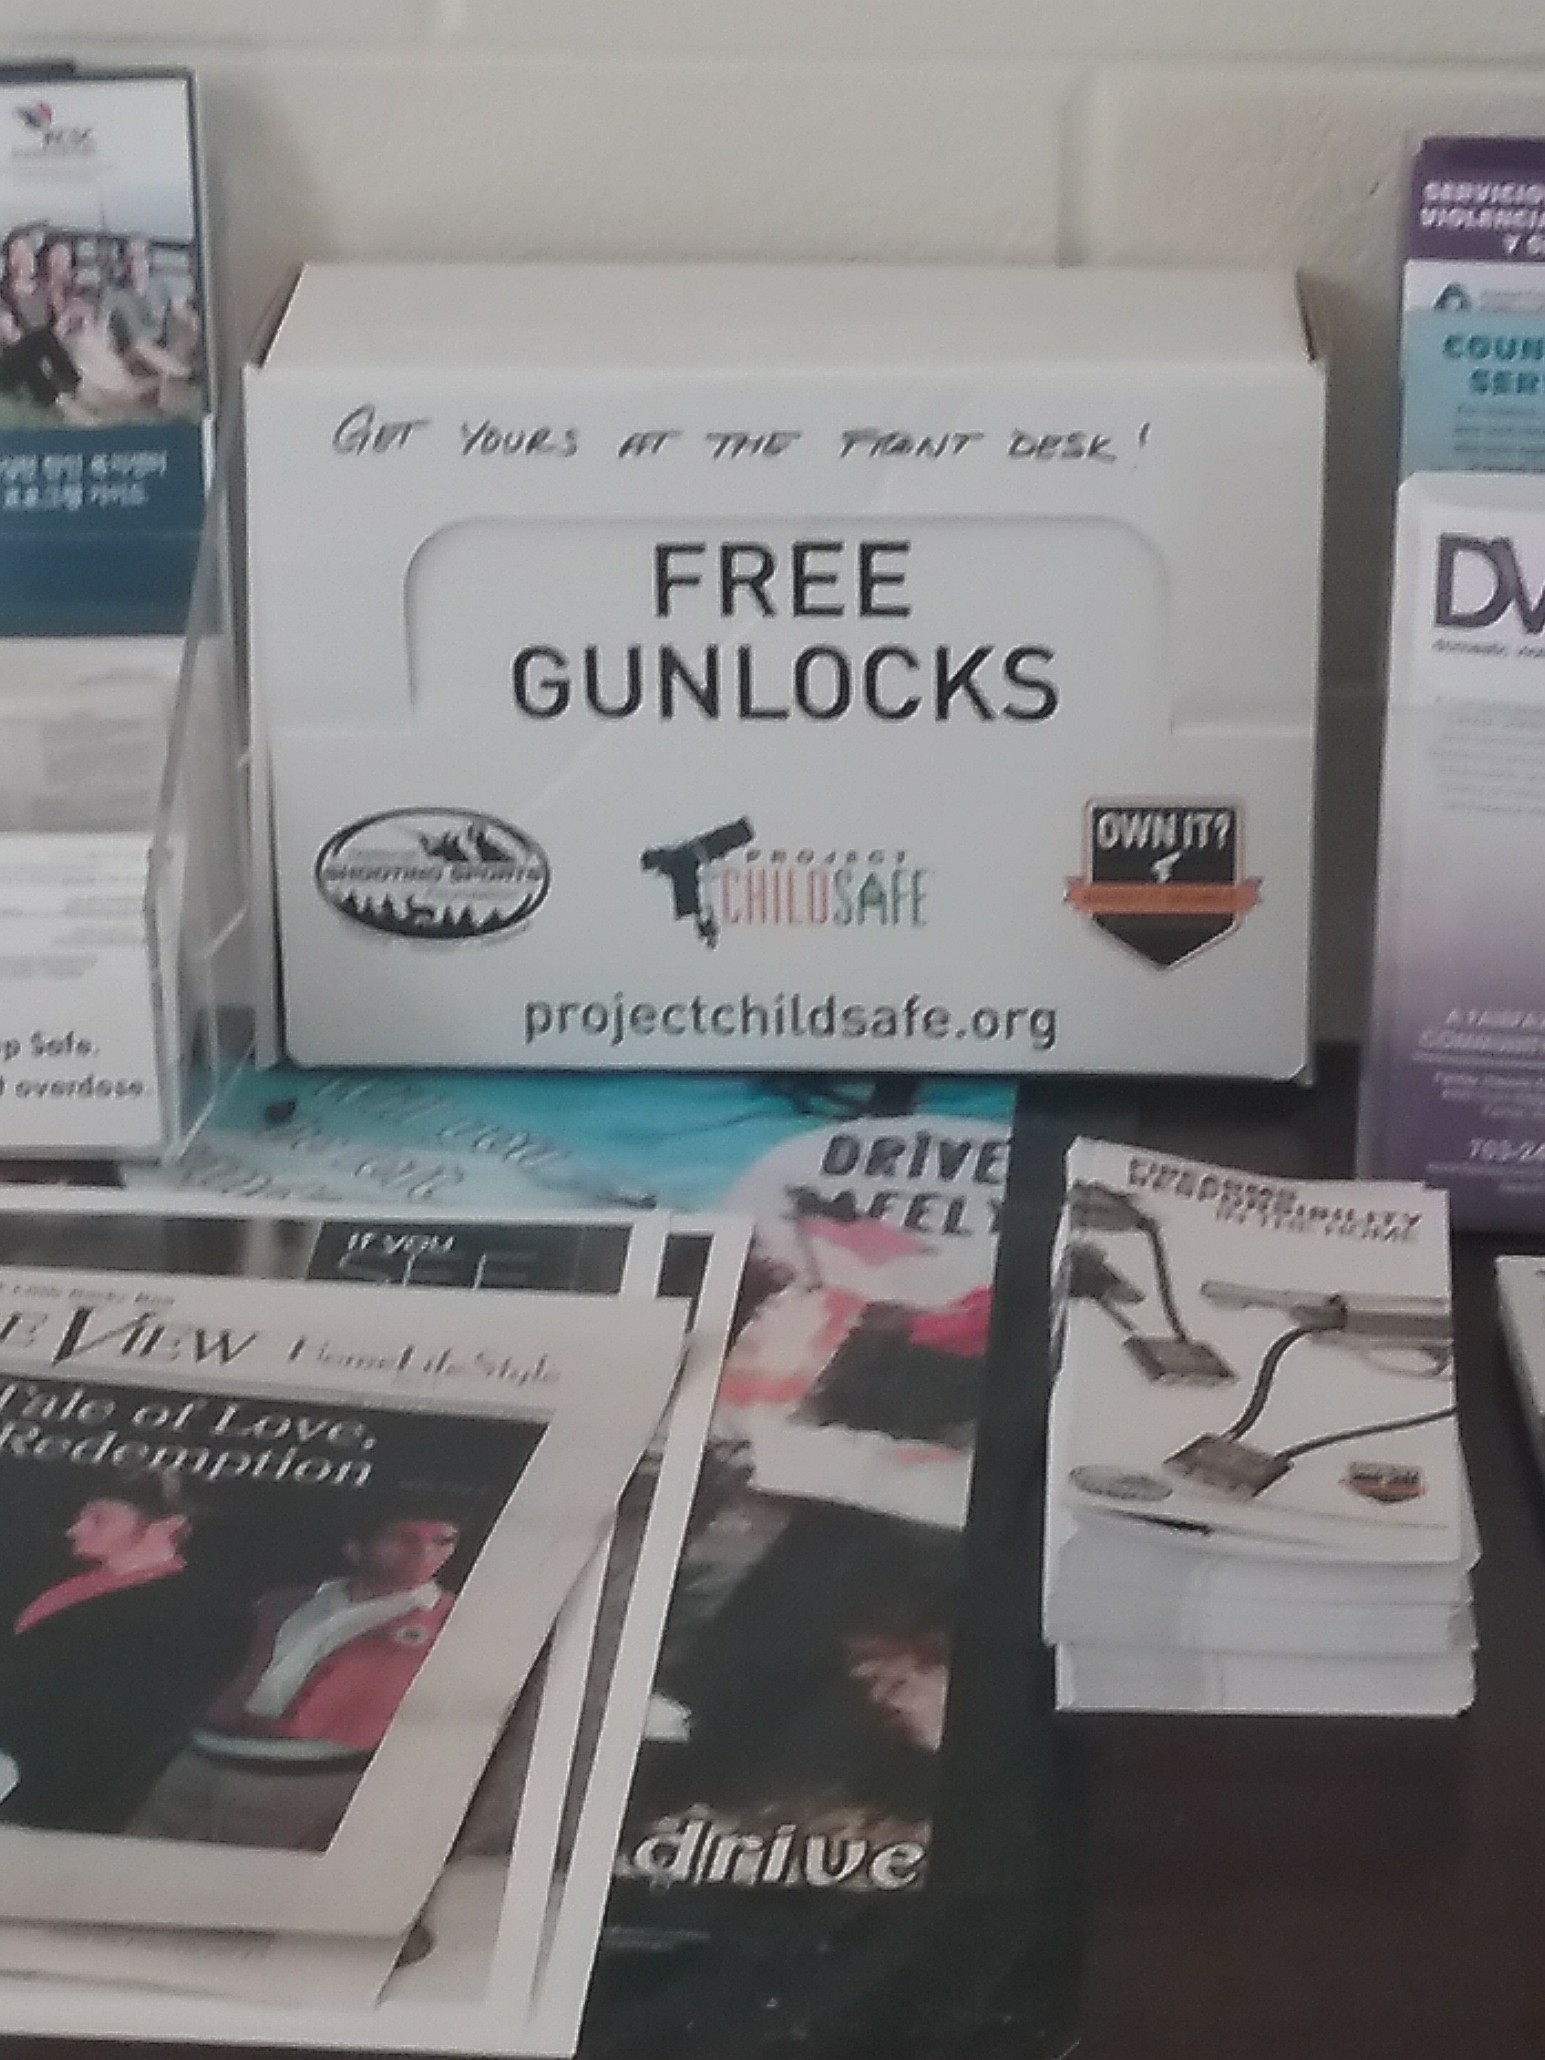 Free gunlocks for the masses.